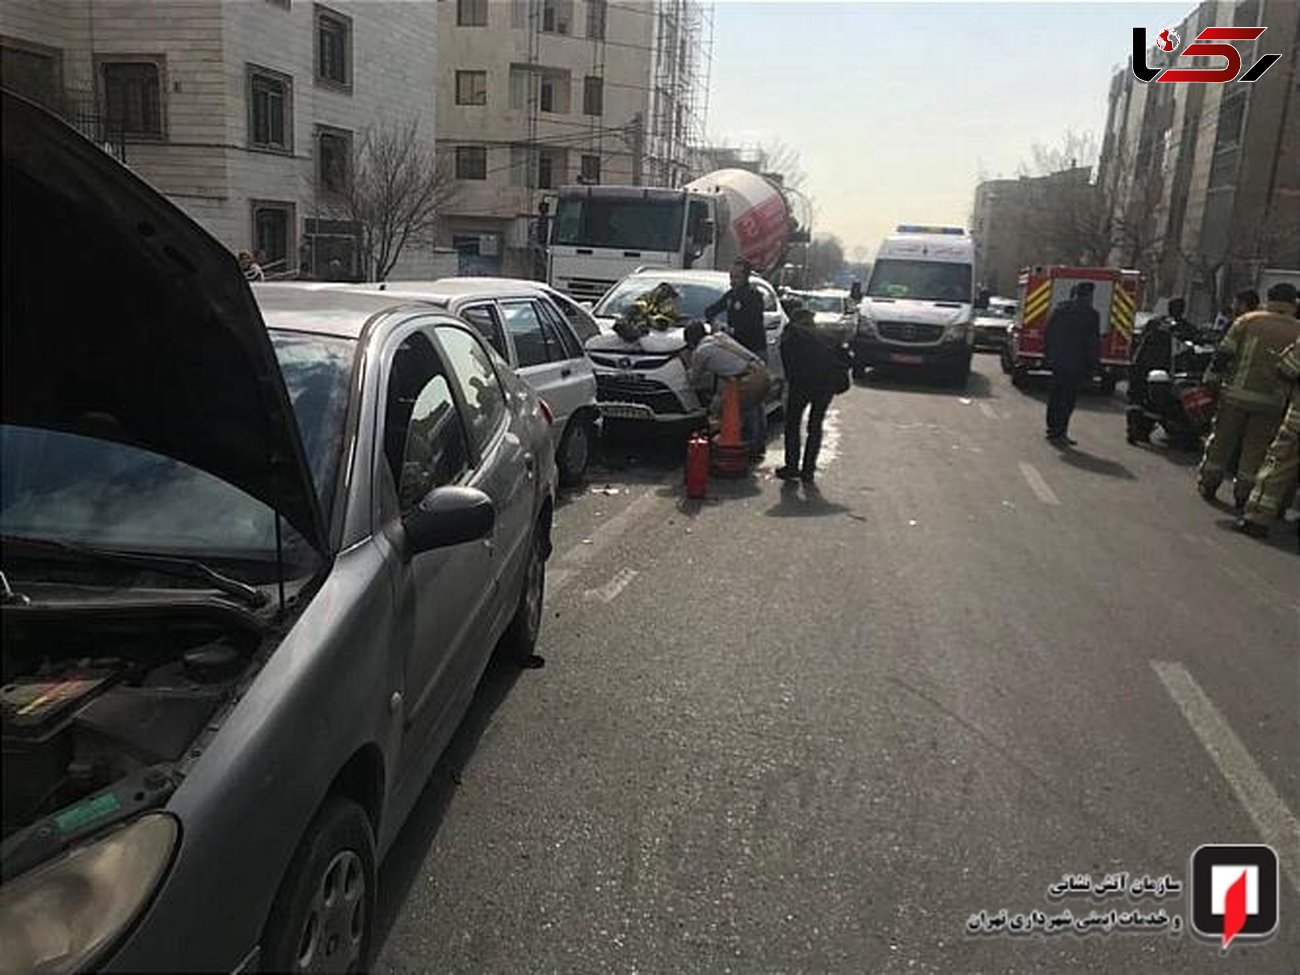 عکس های دلخراش از تصادف زنجیره ای در خیابان ستارخان تهران